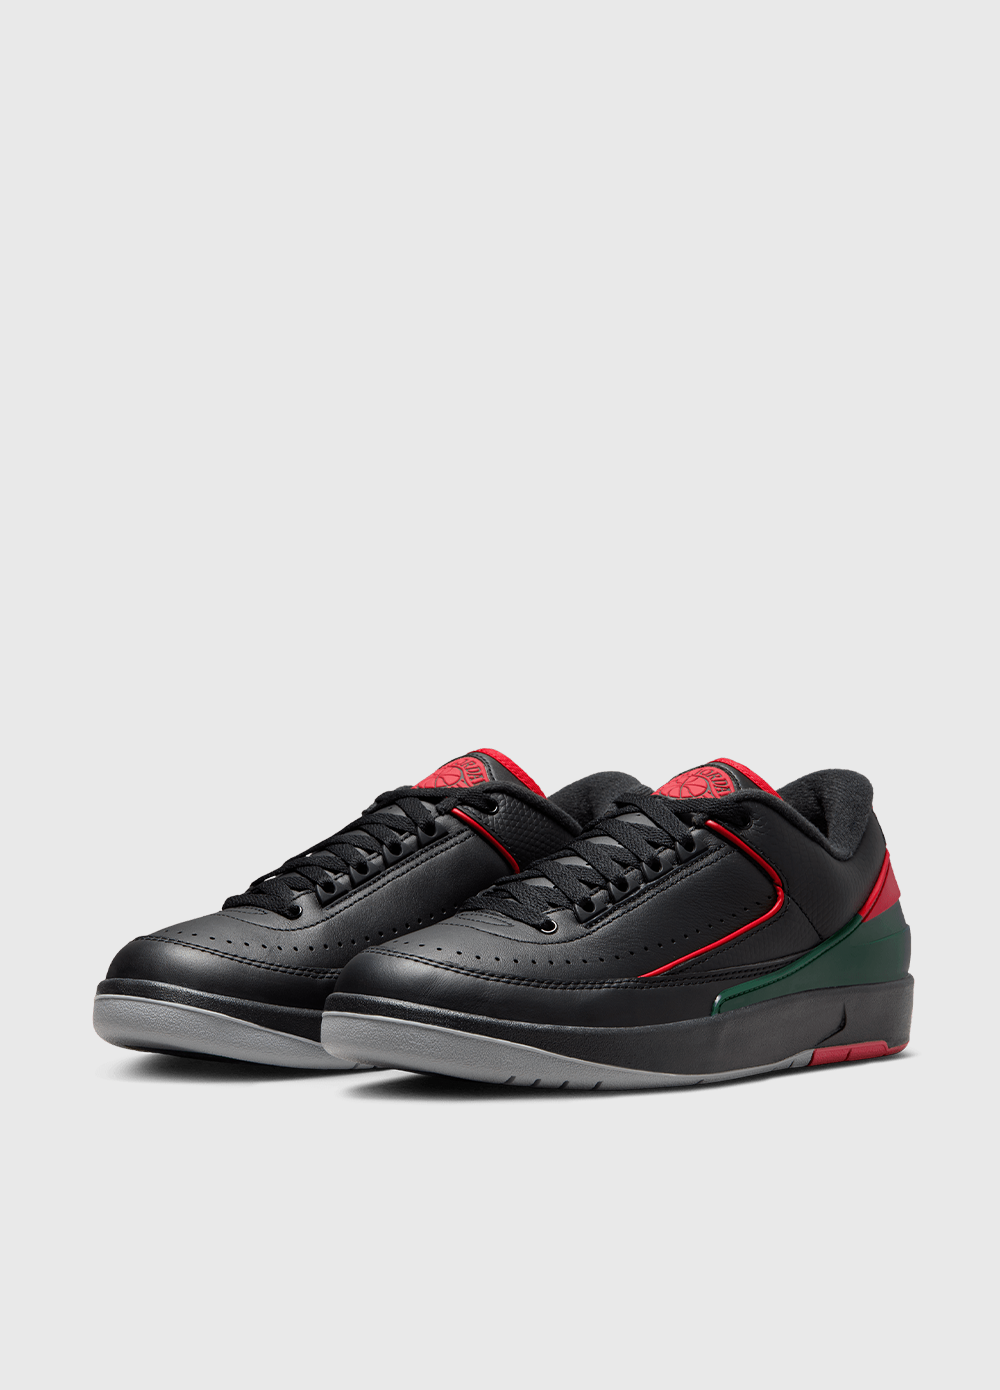 Air Jordan 2 Retro Low 'Origins' Sneakers